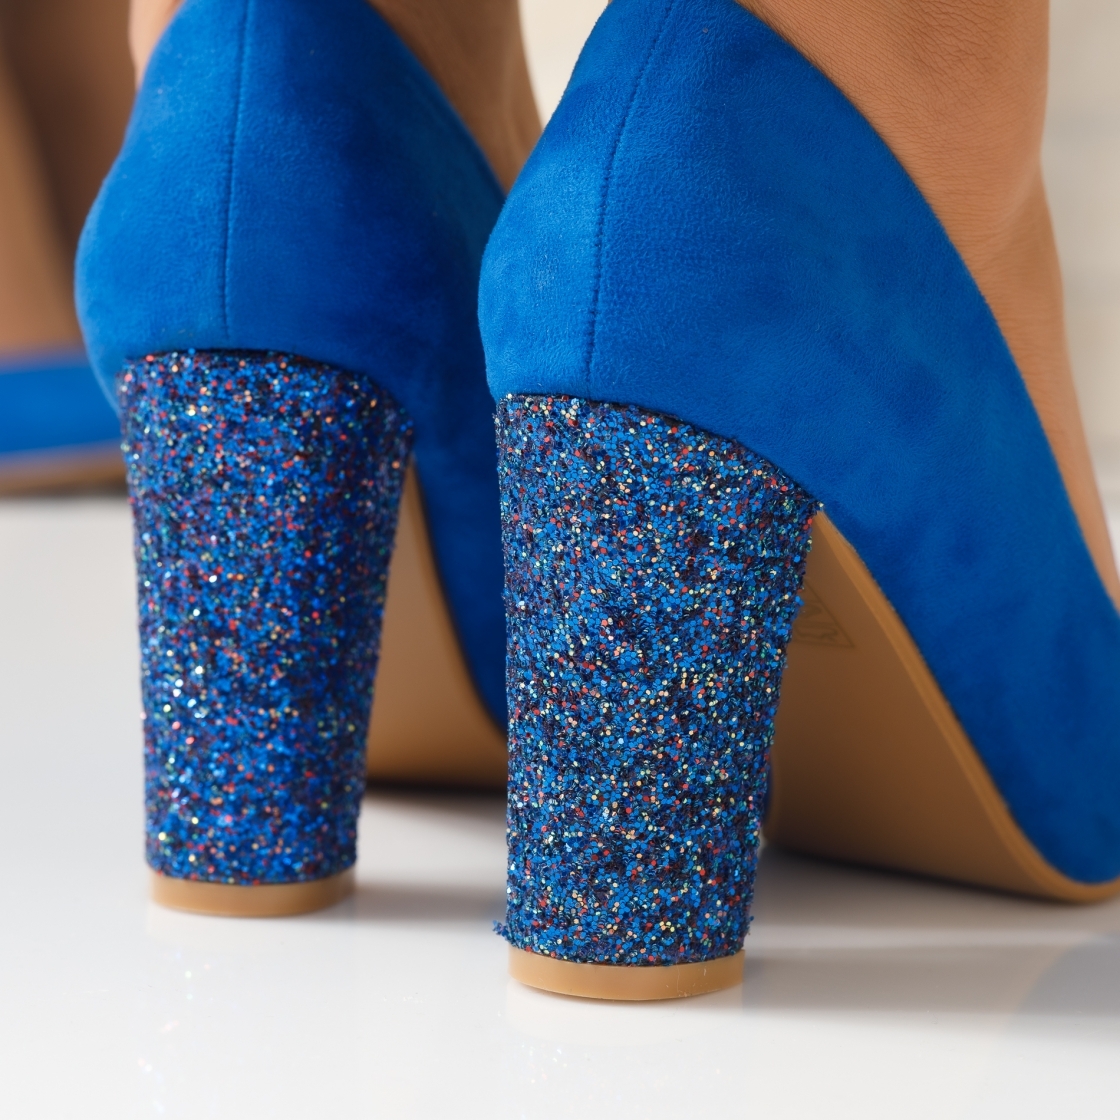 Pantofi Dama cu Toc Katherine Bleumarin #3925M